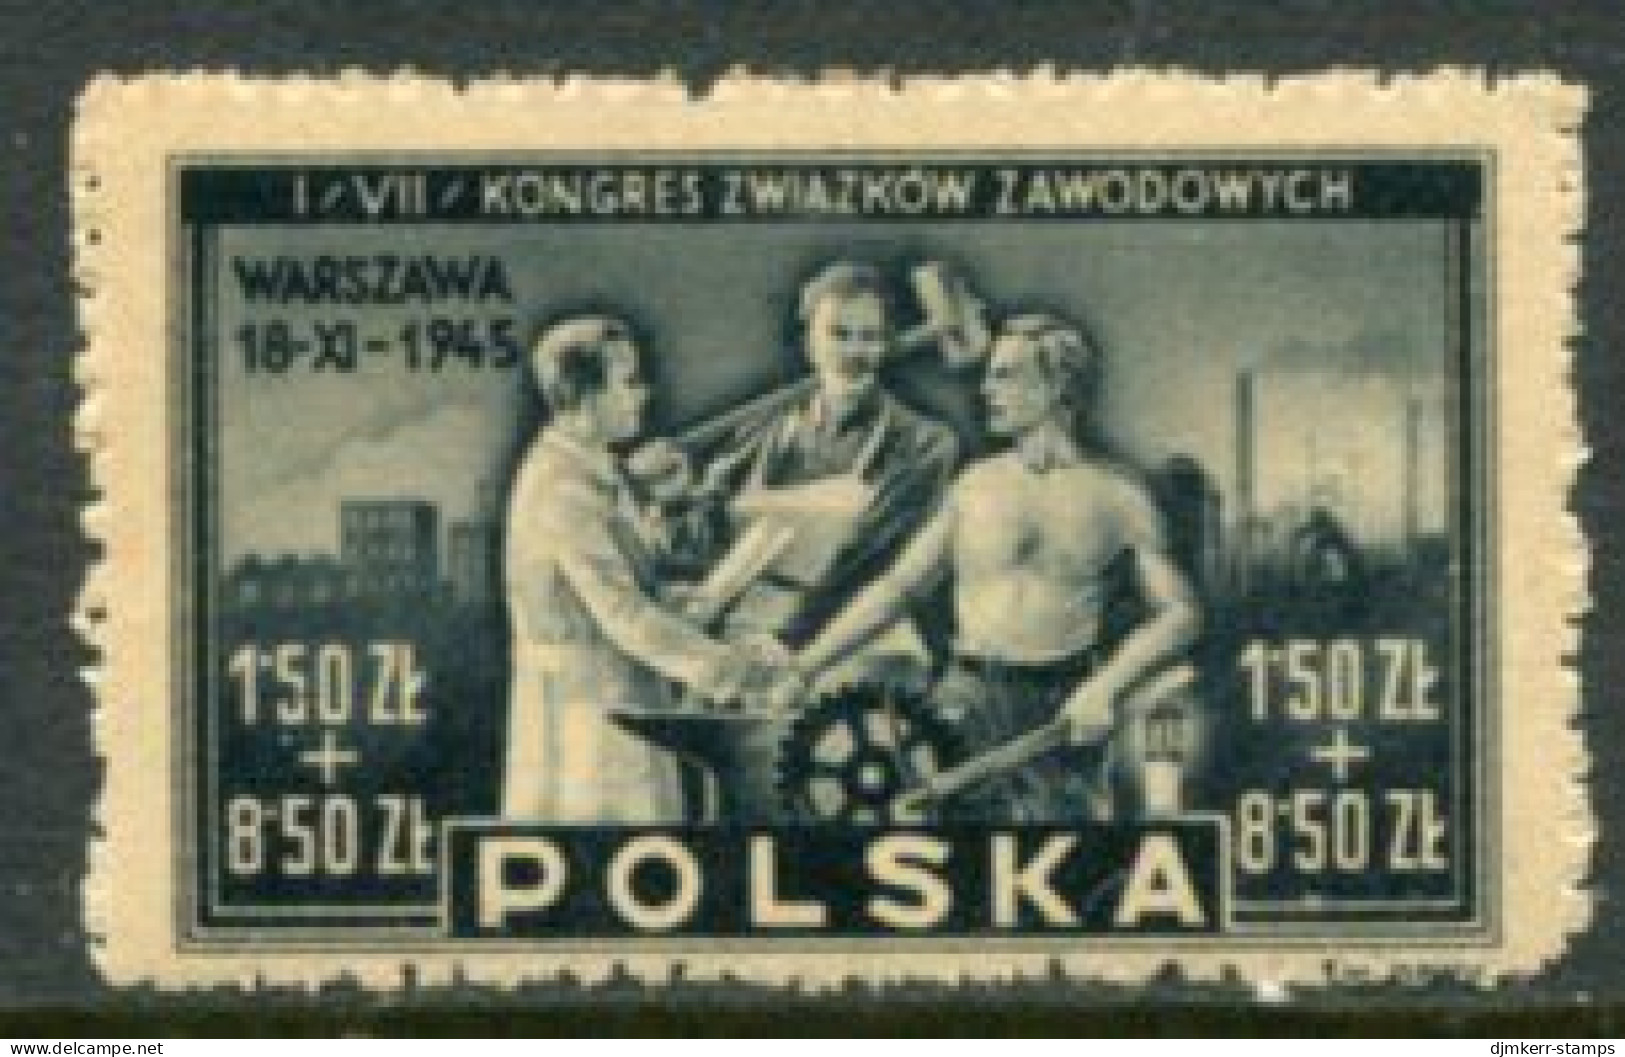 POLAND 1945 Trades Union Congress MNH / **.  Michel 413 - Nuovi